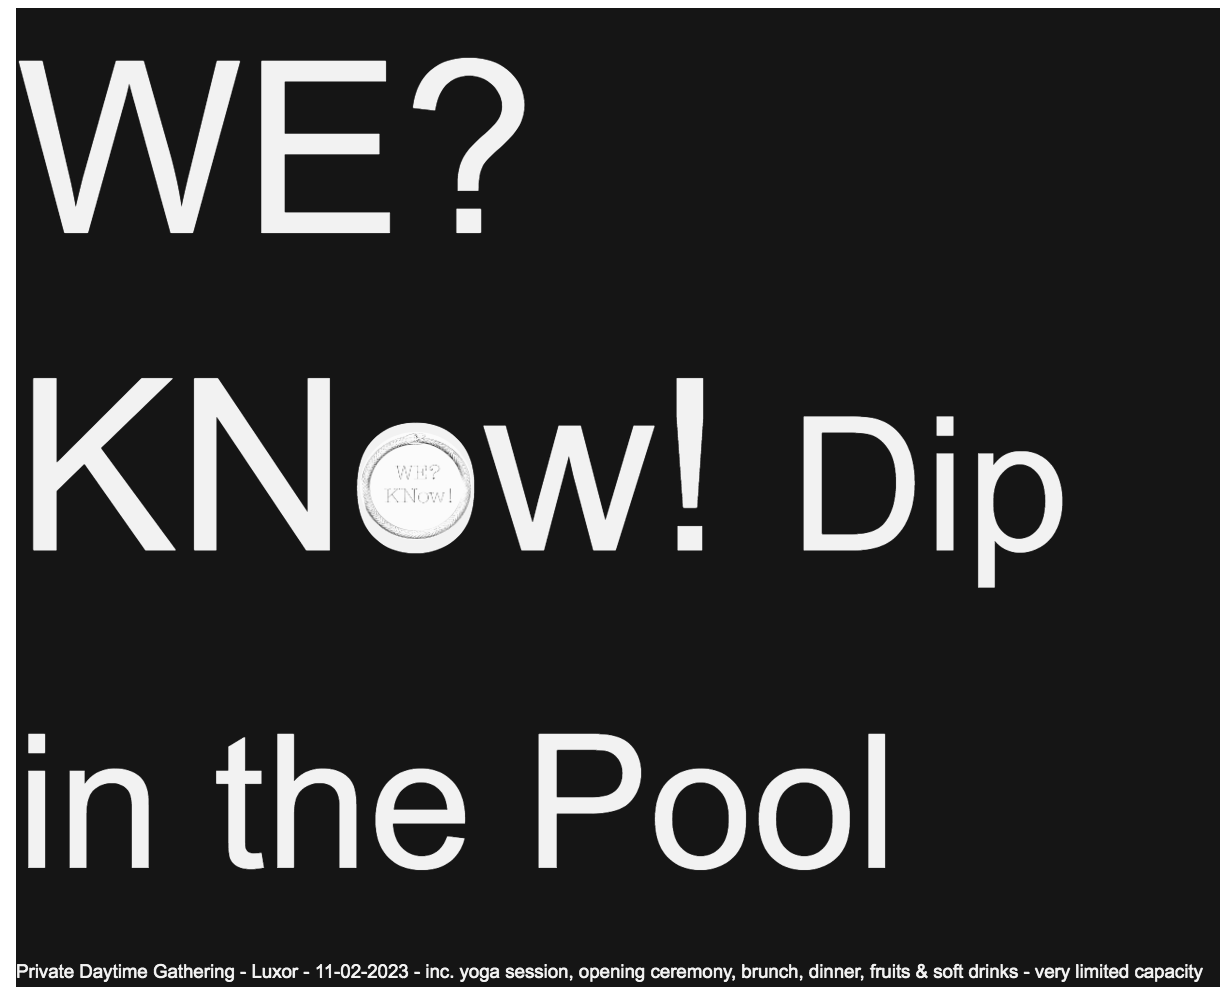 WE? KNow! dip in the Pool - Página frontal